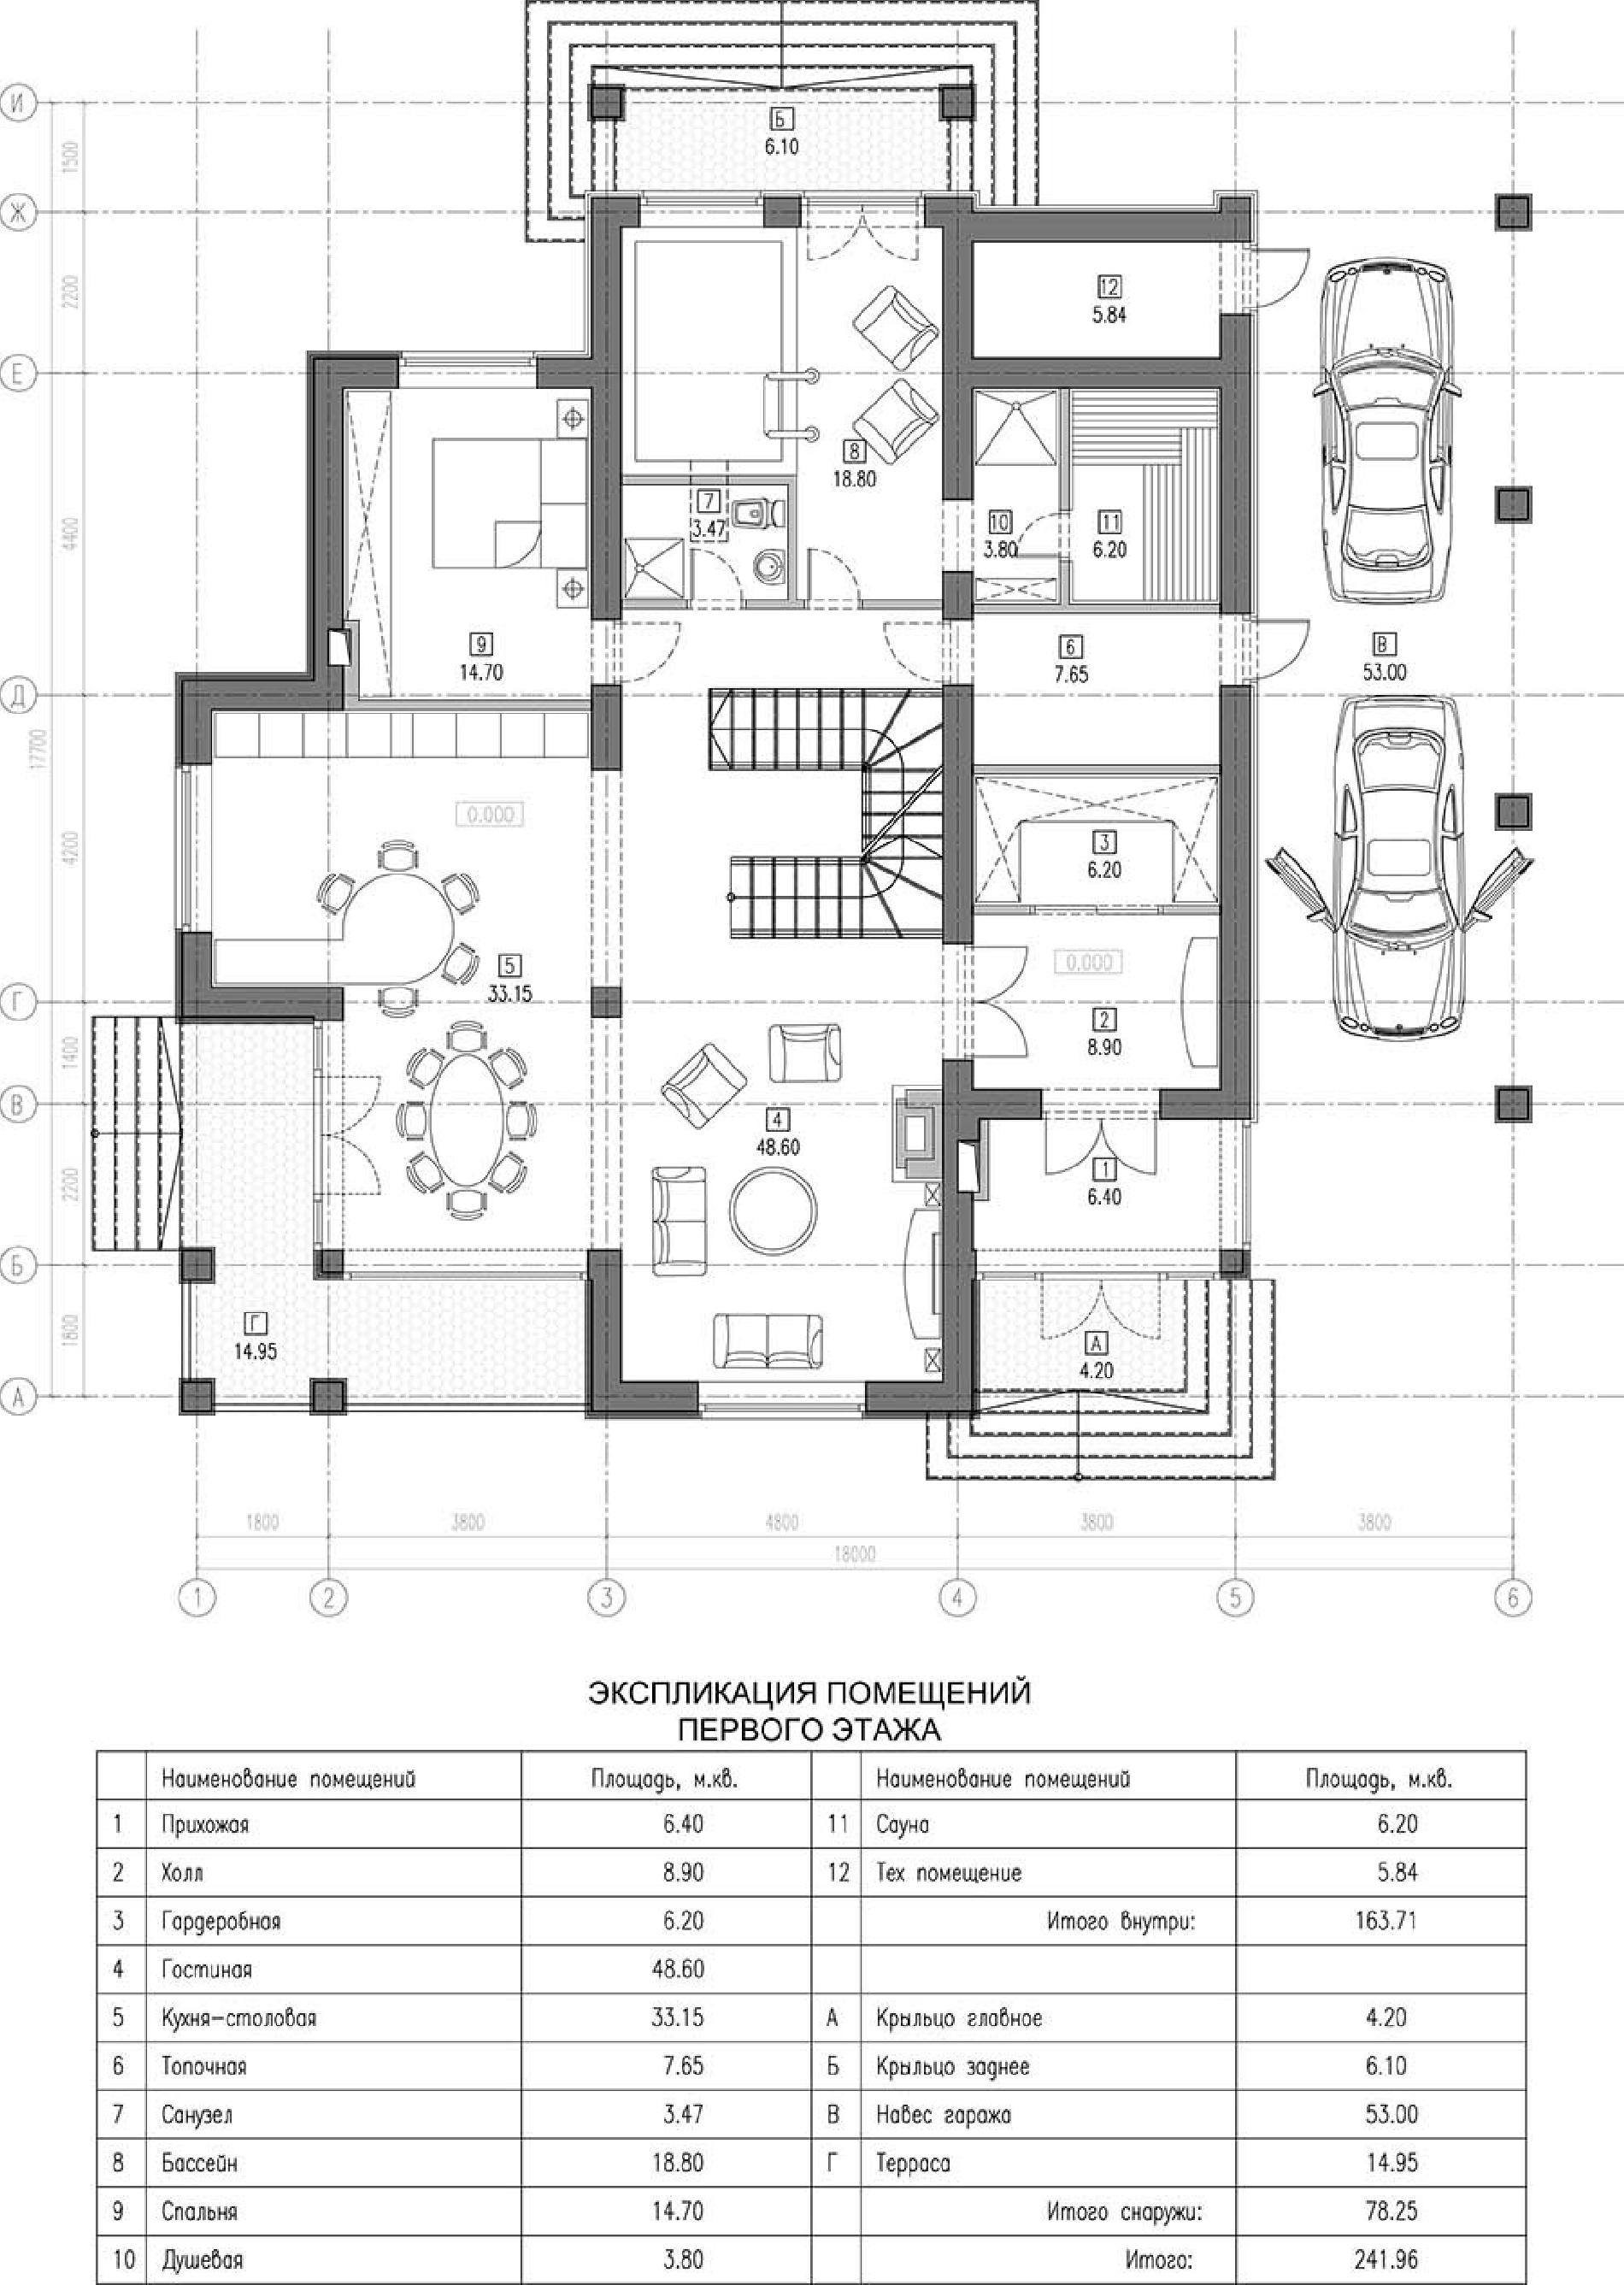 Планировка проекта дома №kr-300 5bbb339f49556.jpg